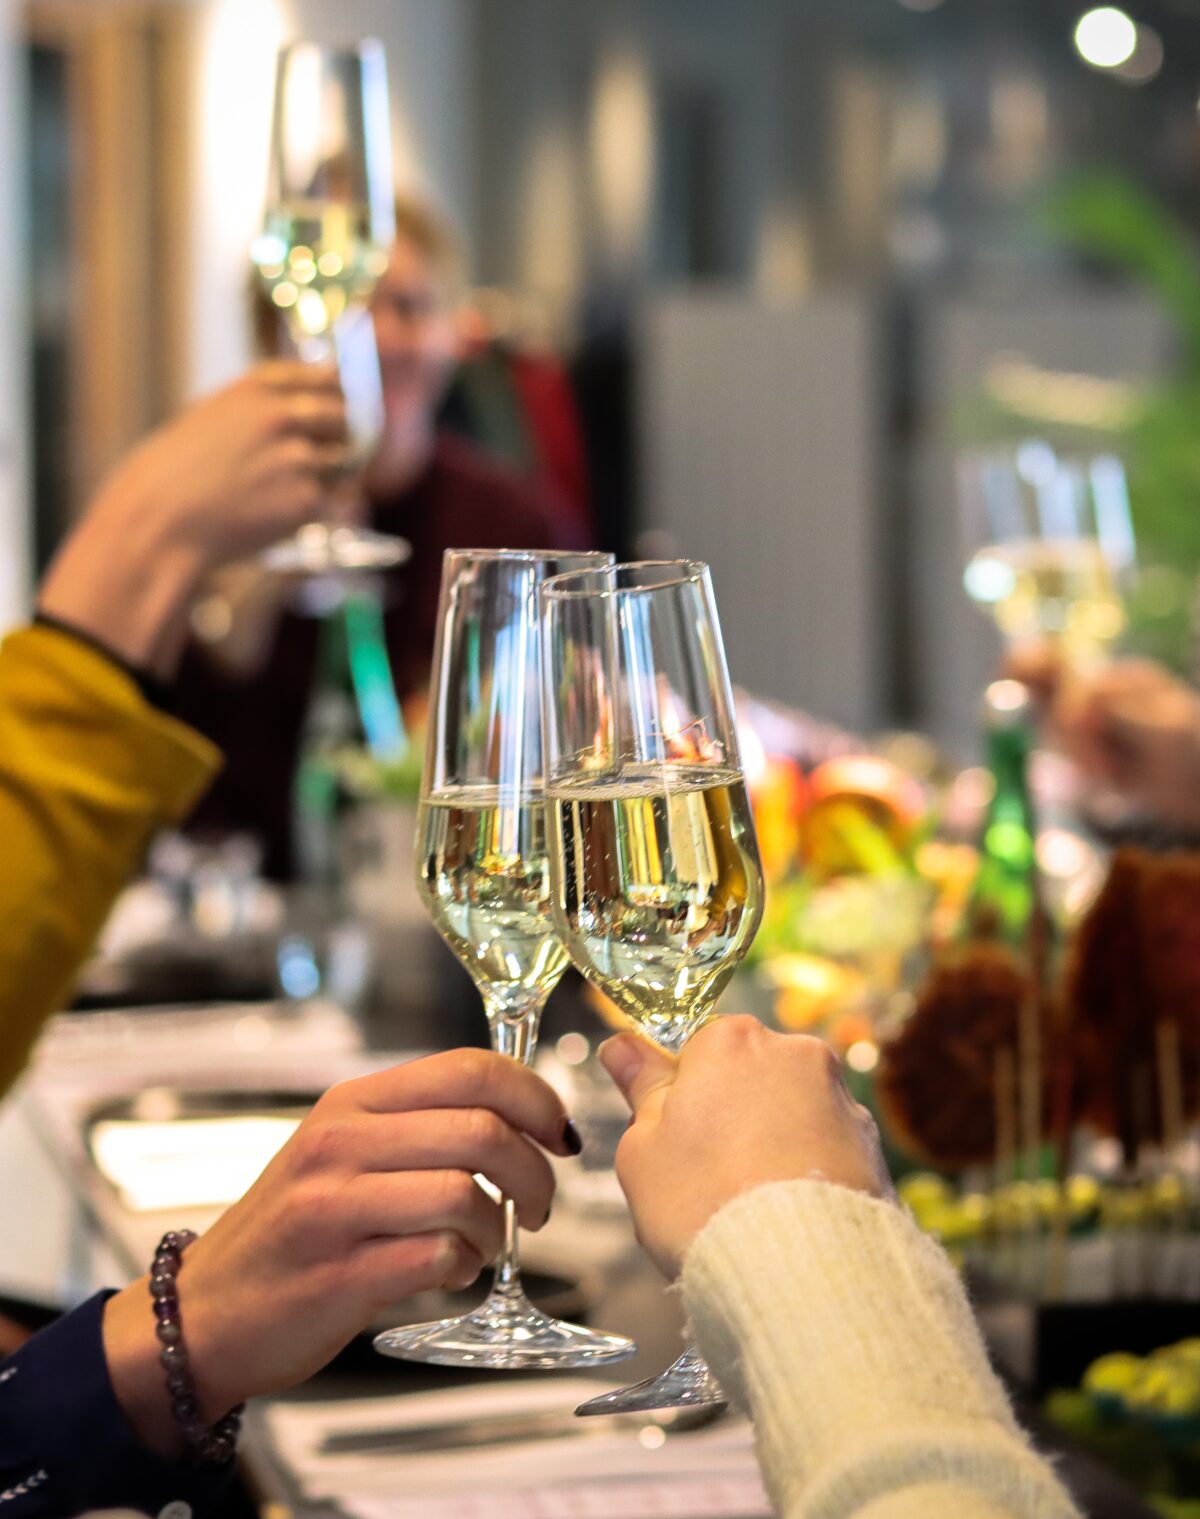 PASSENGER TERMINAL AMSTERDAM heeft twee nieuwe cateringpartners- mensen die proosten met champagne